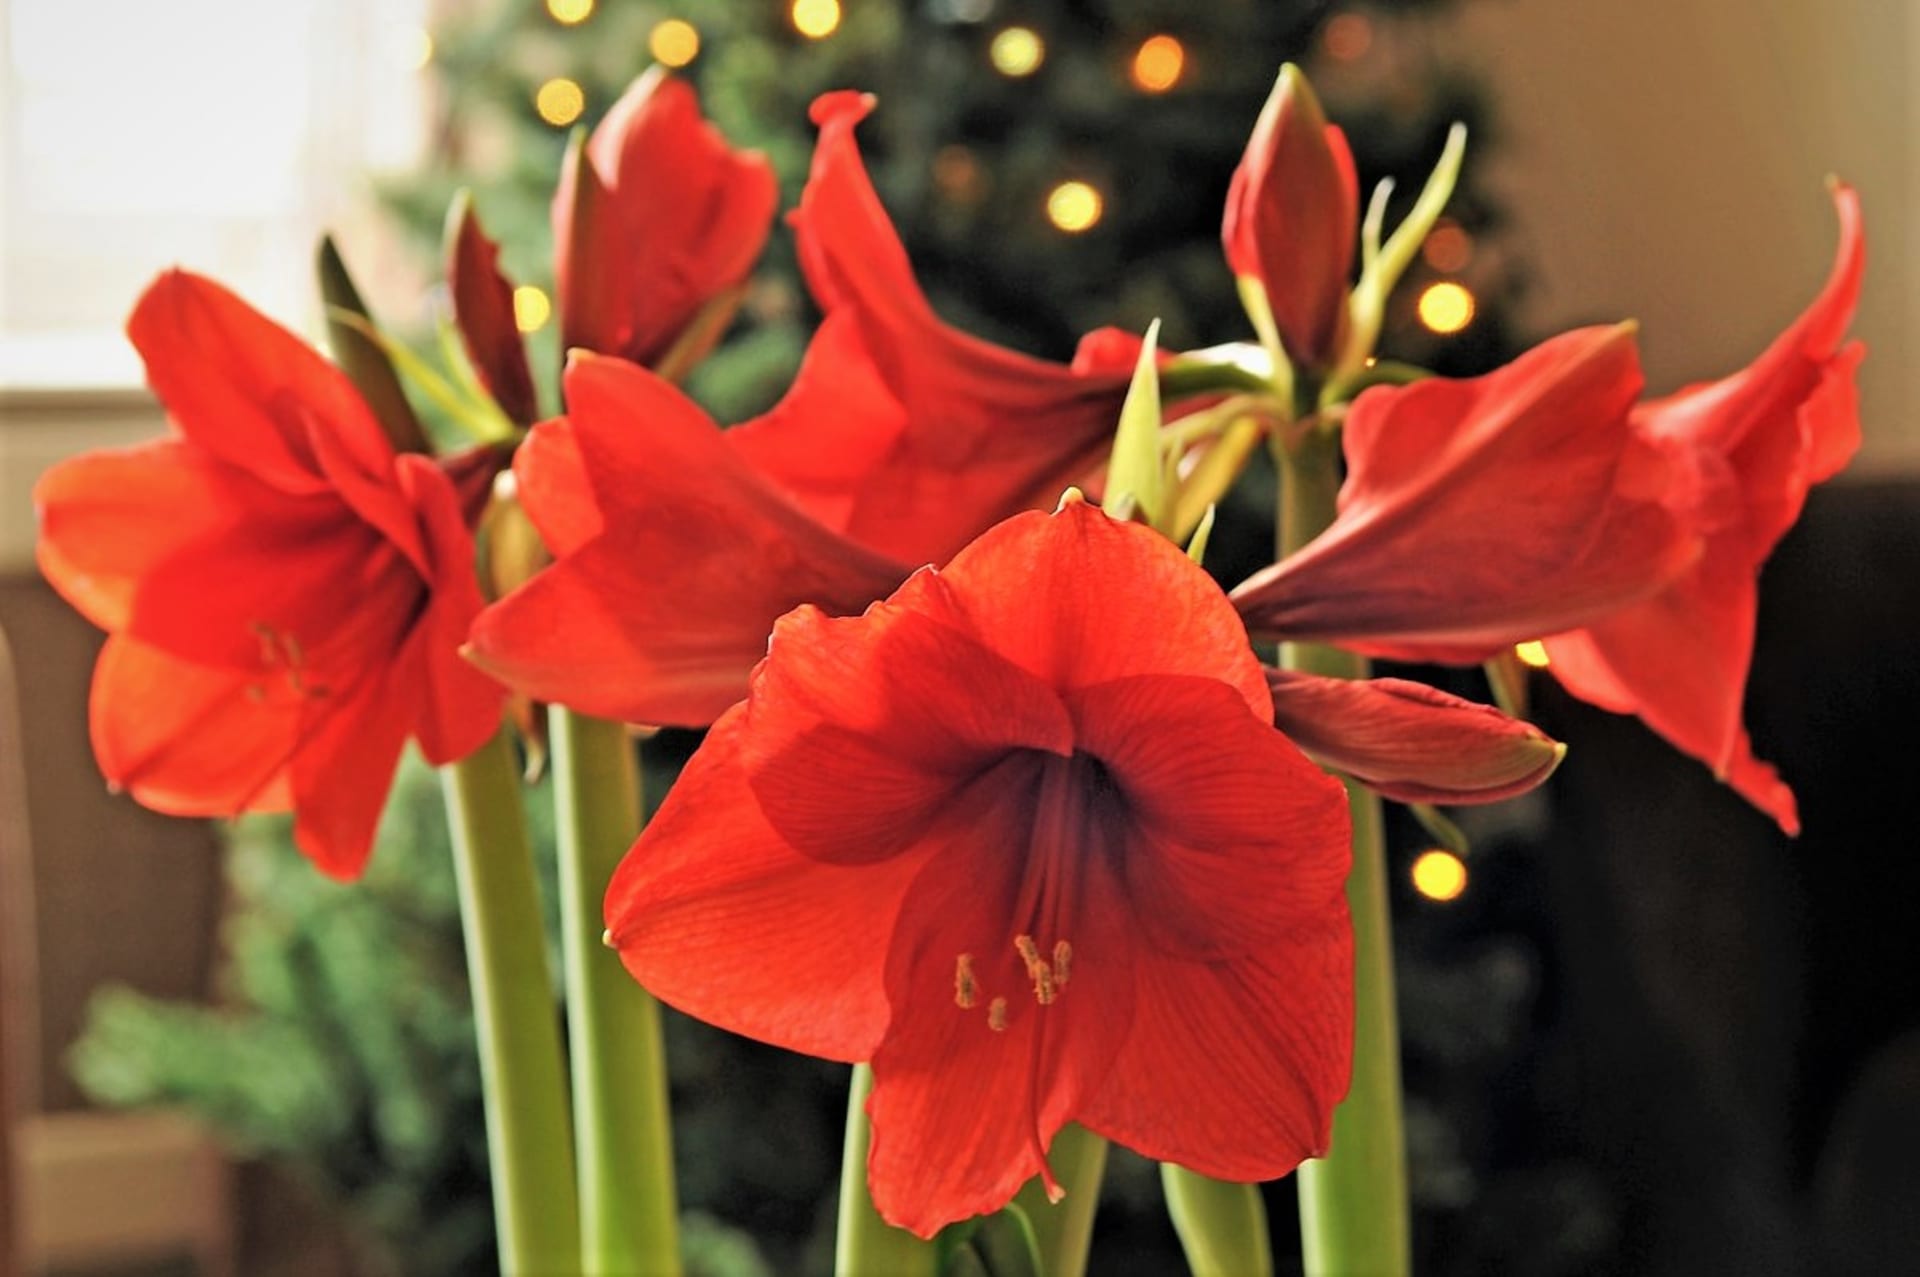 Květní stonek nese 3–6 květů s průměrem kolem 18 centimetrů a je dutý. Tyčinky z květu, který nijak nevoní, vyčnívají ven. Hvězdník má během kvetení listy.